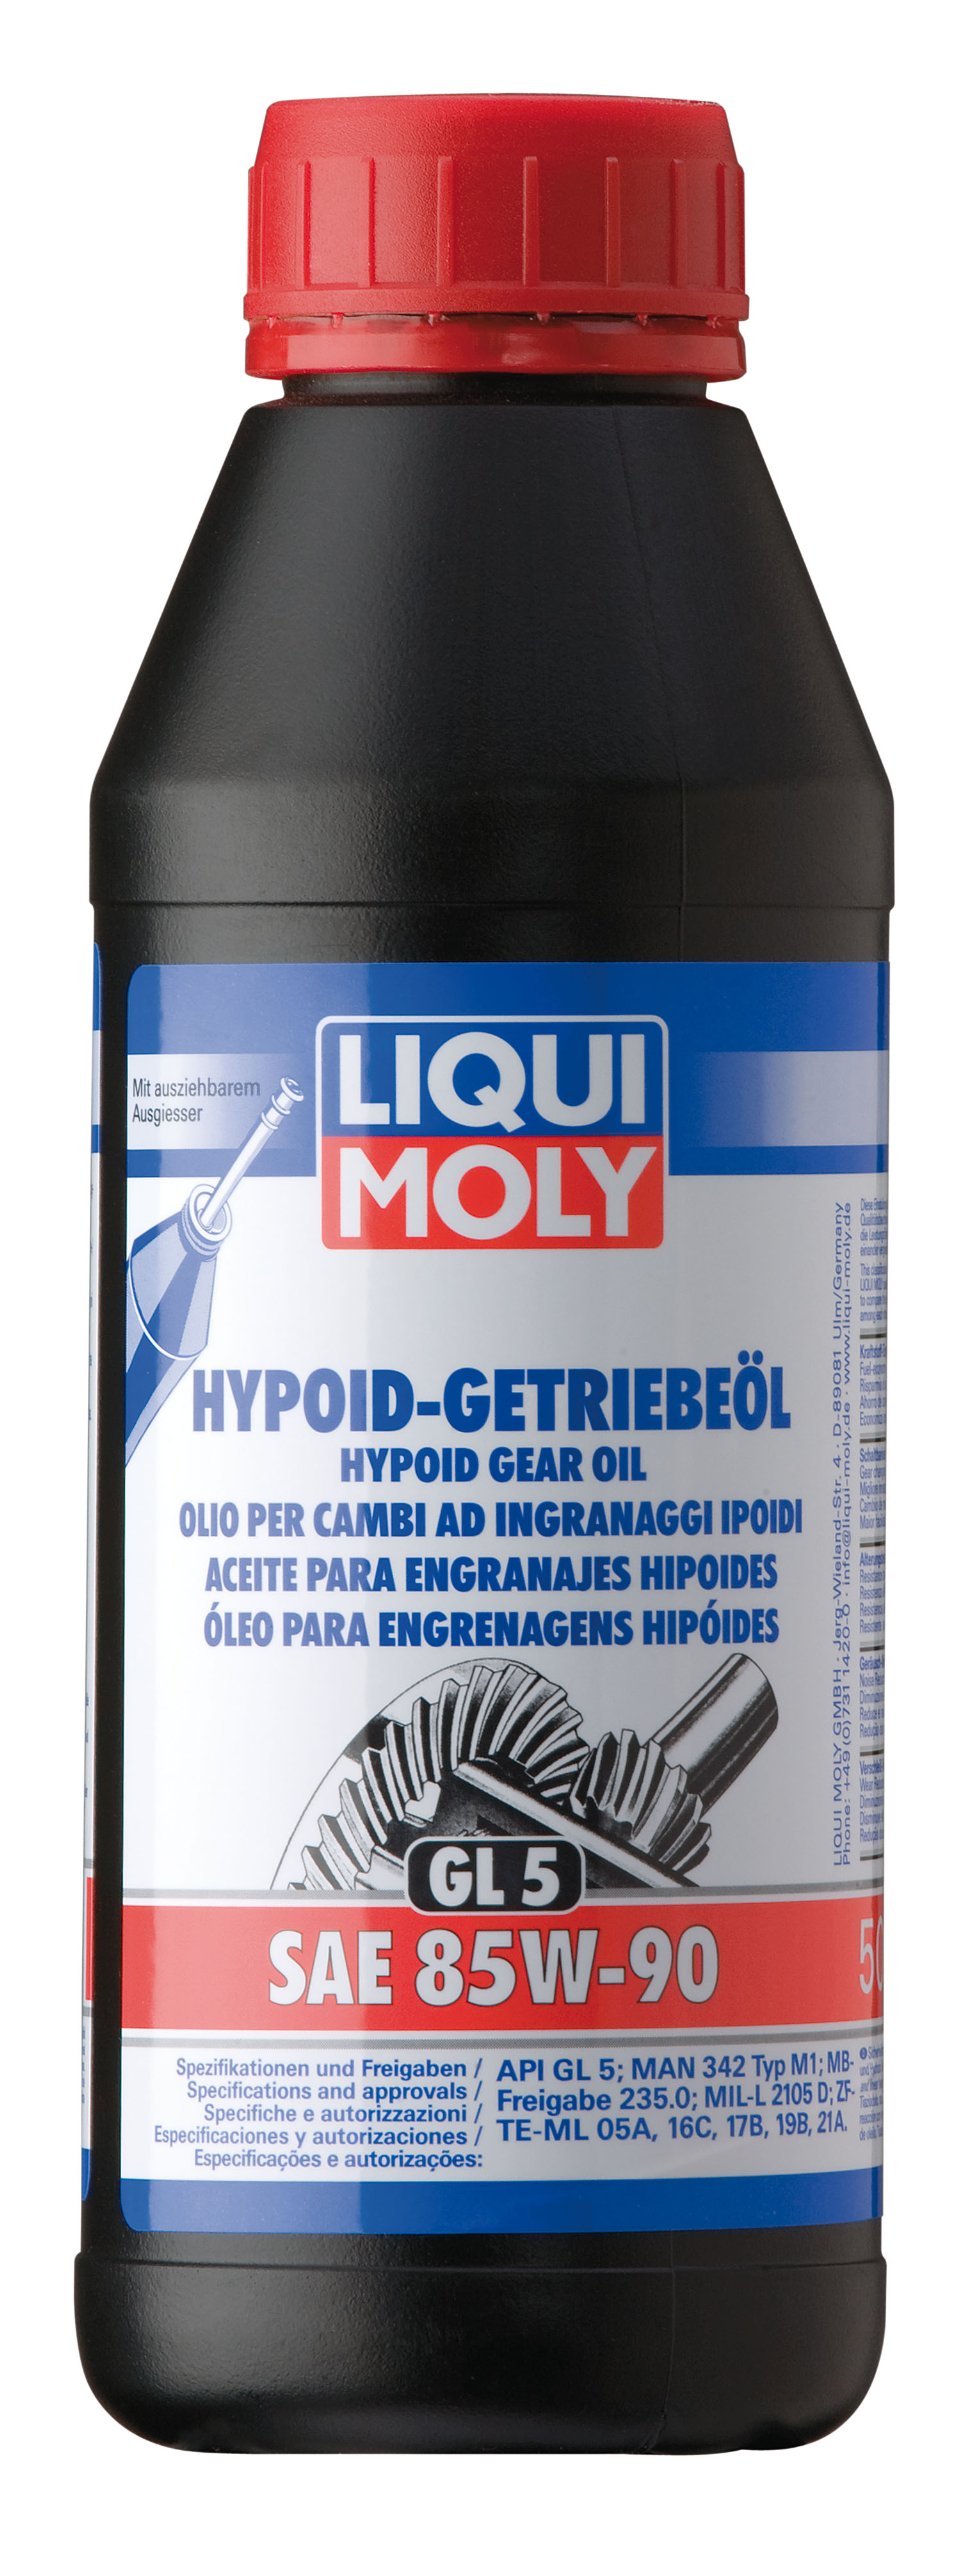 LIQUI MOLY Hypoid-Getriebeöl (GL5) SAE 85W-90 | 500 ml | Getriebeöl | Hydrauliköl | Art.-Nr.: 1404 von Liqui Moly